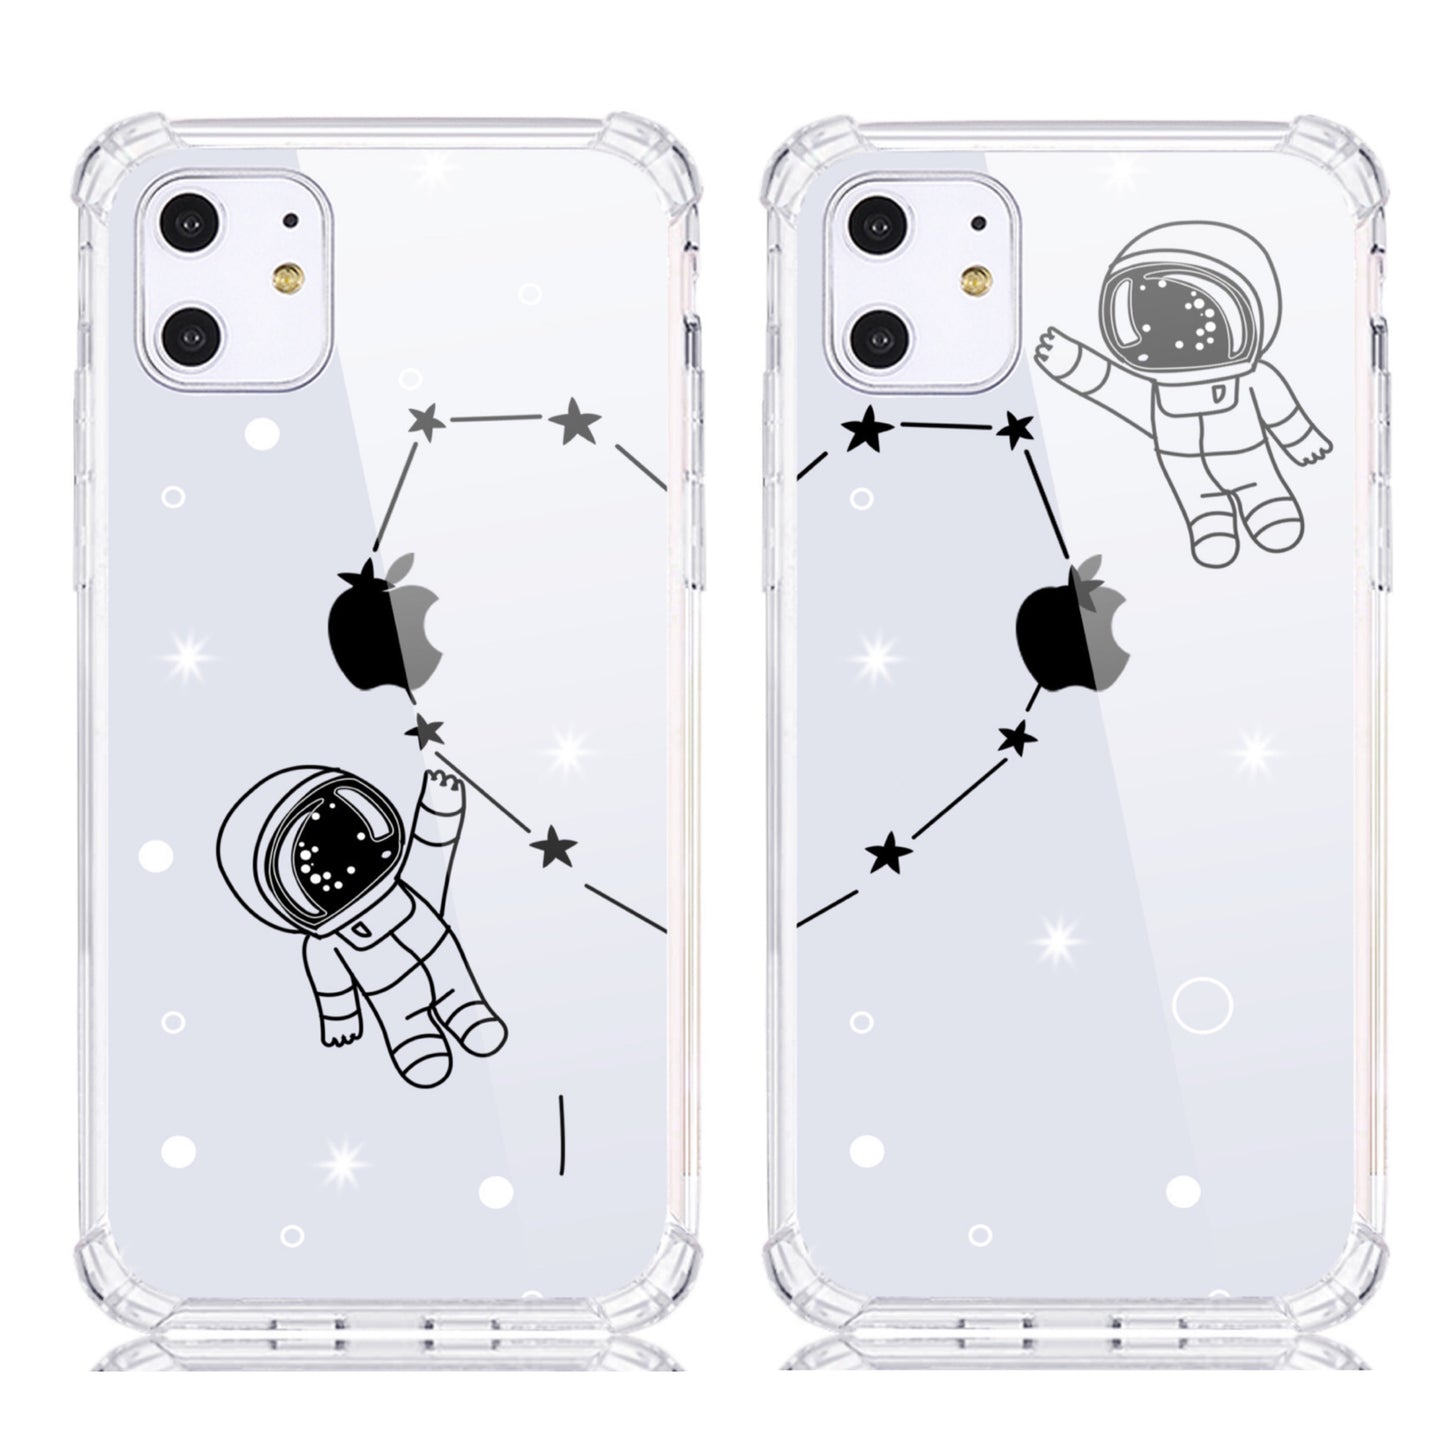 Astronaute de dessin animé se connecter avec un couple d'illustration de coeur Coque et skin adhésive iPhone